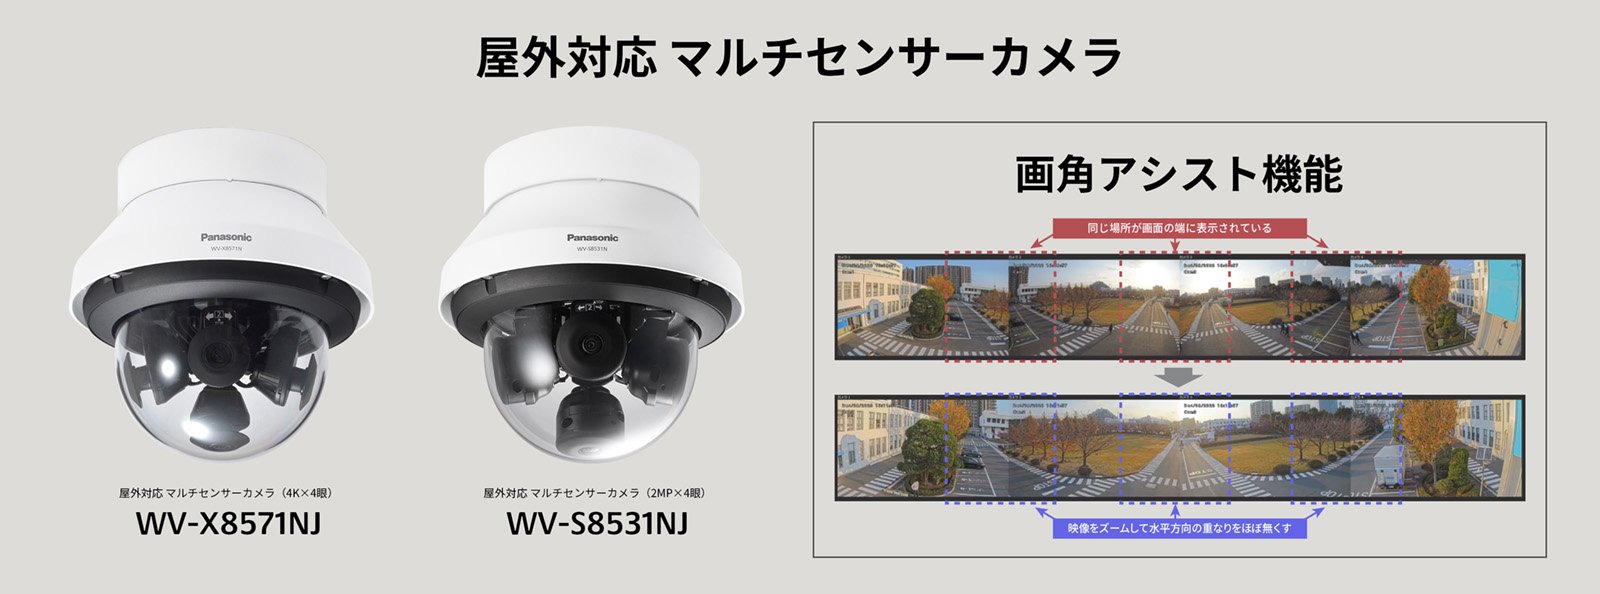 屋外対応 マルチセンサーカメラ WV-X8571NJ、WV-S8531NJ、画角アシスト機能イメージ